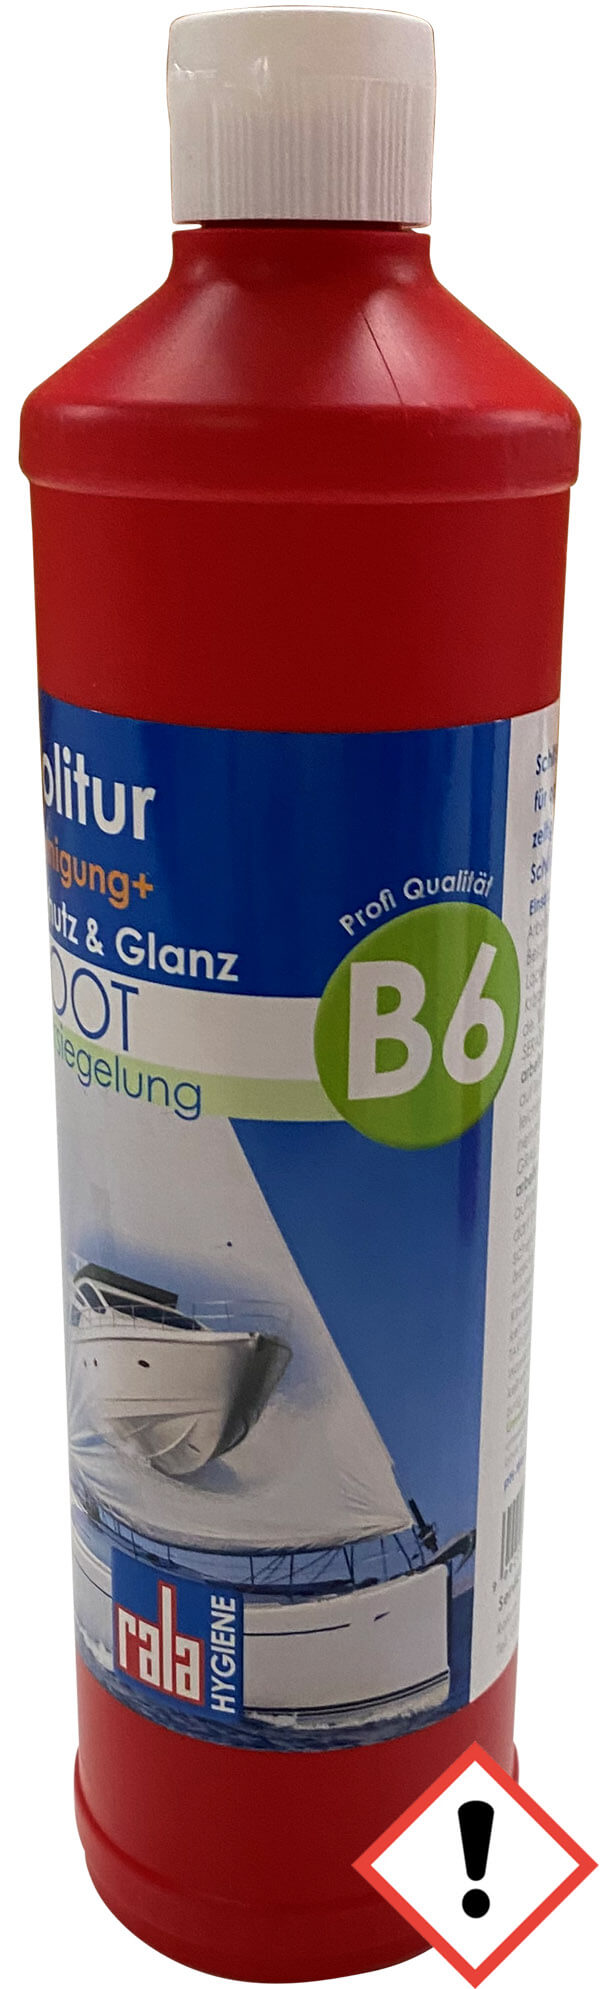 B6 Glanzversieg + Reinigung